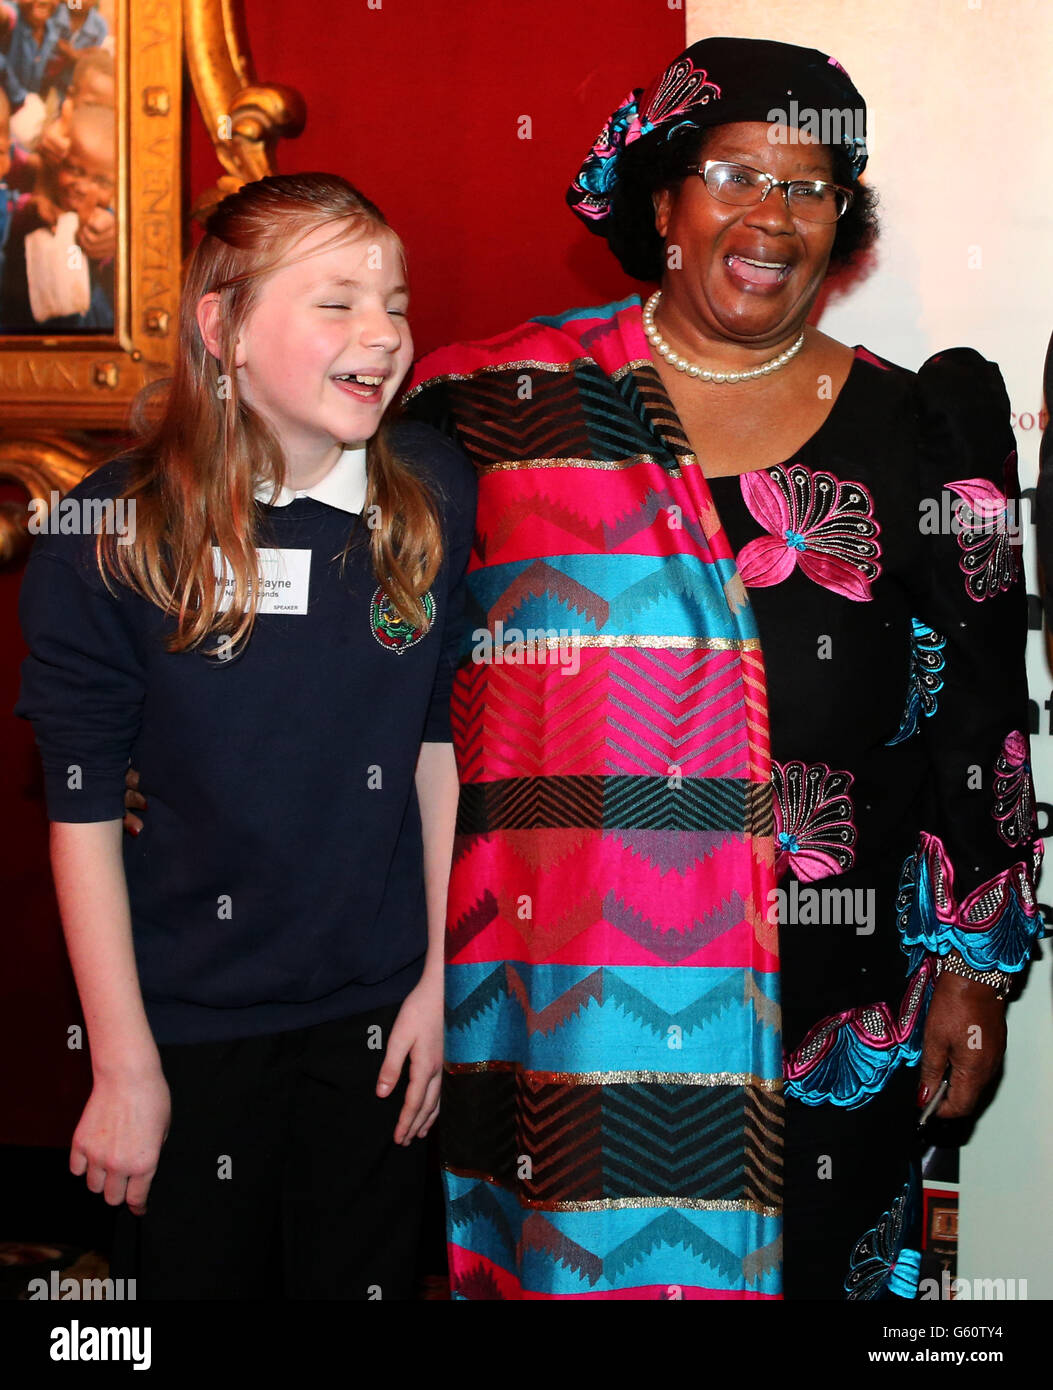 S prima capo di Stato femminile, con Martha Payne, blogger studentessa e raccolta fondi, mentre hanno partecipato ad un evento a Edimburgo organizzato dalla Scotland Malawi Partnership. Foto Stock